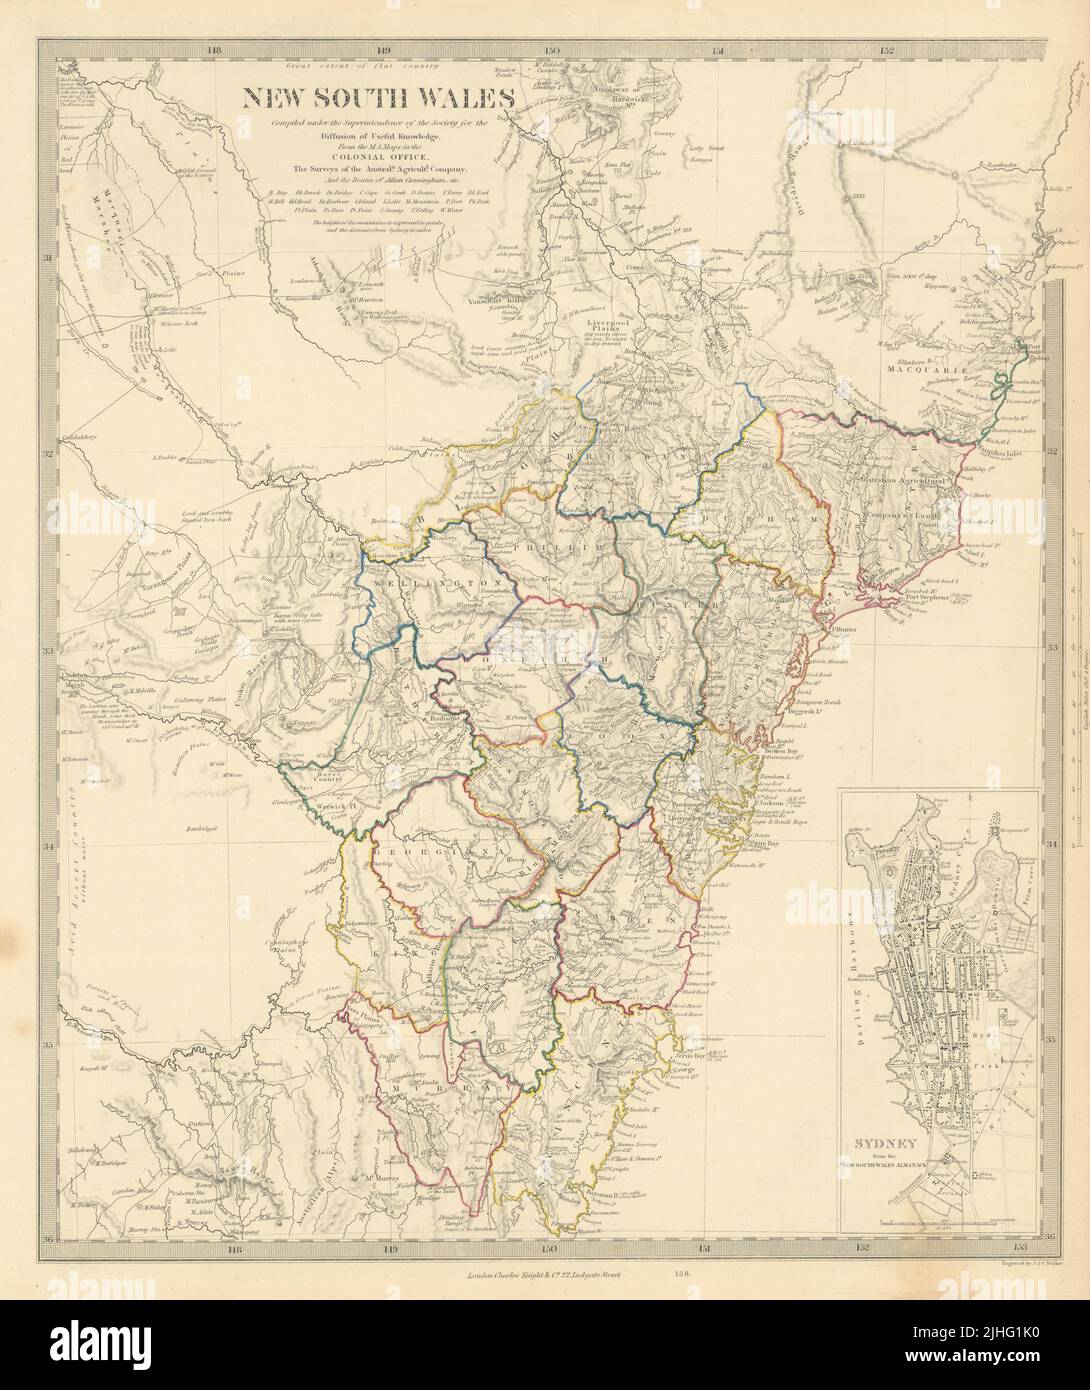 NUEVA GALES DEL SUR basada en las rutas de Cunningham. Plano de LA ciudad DE SÍDNEY. Mapa SDUK 1851 Foto de stock